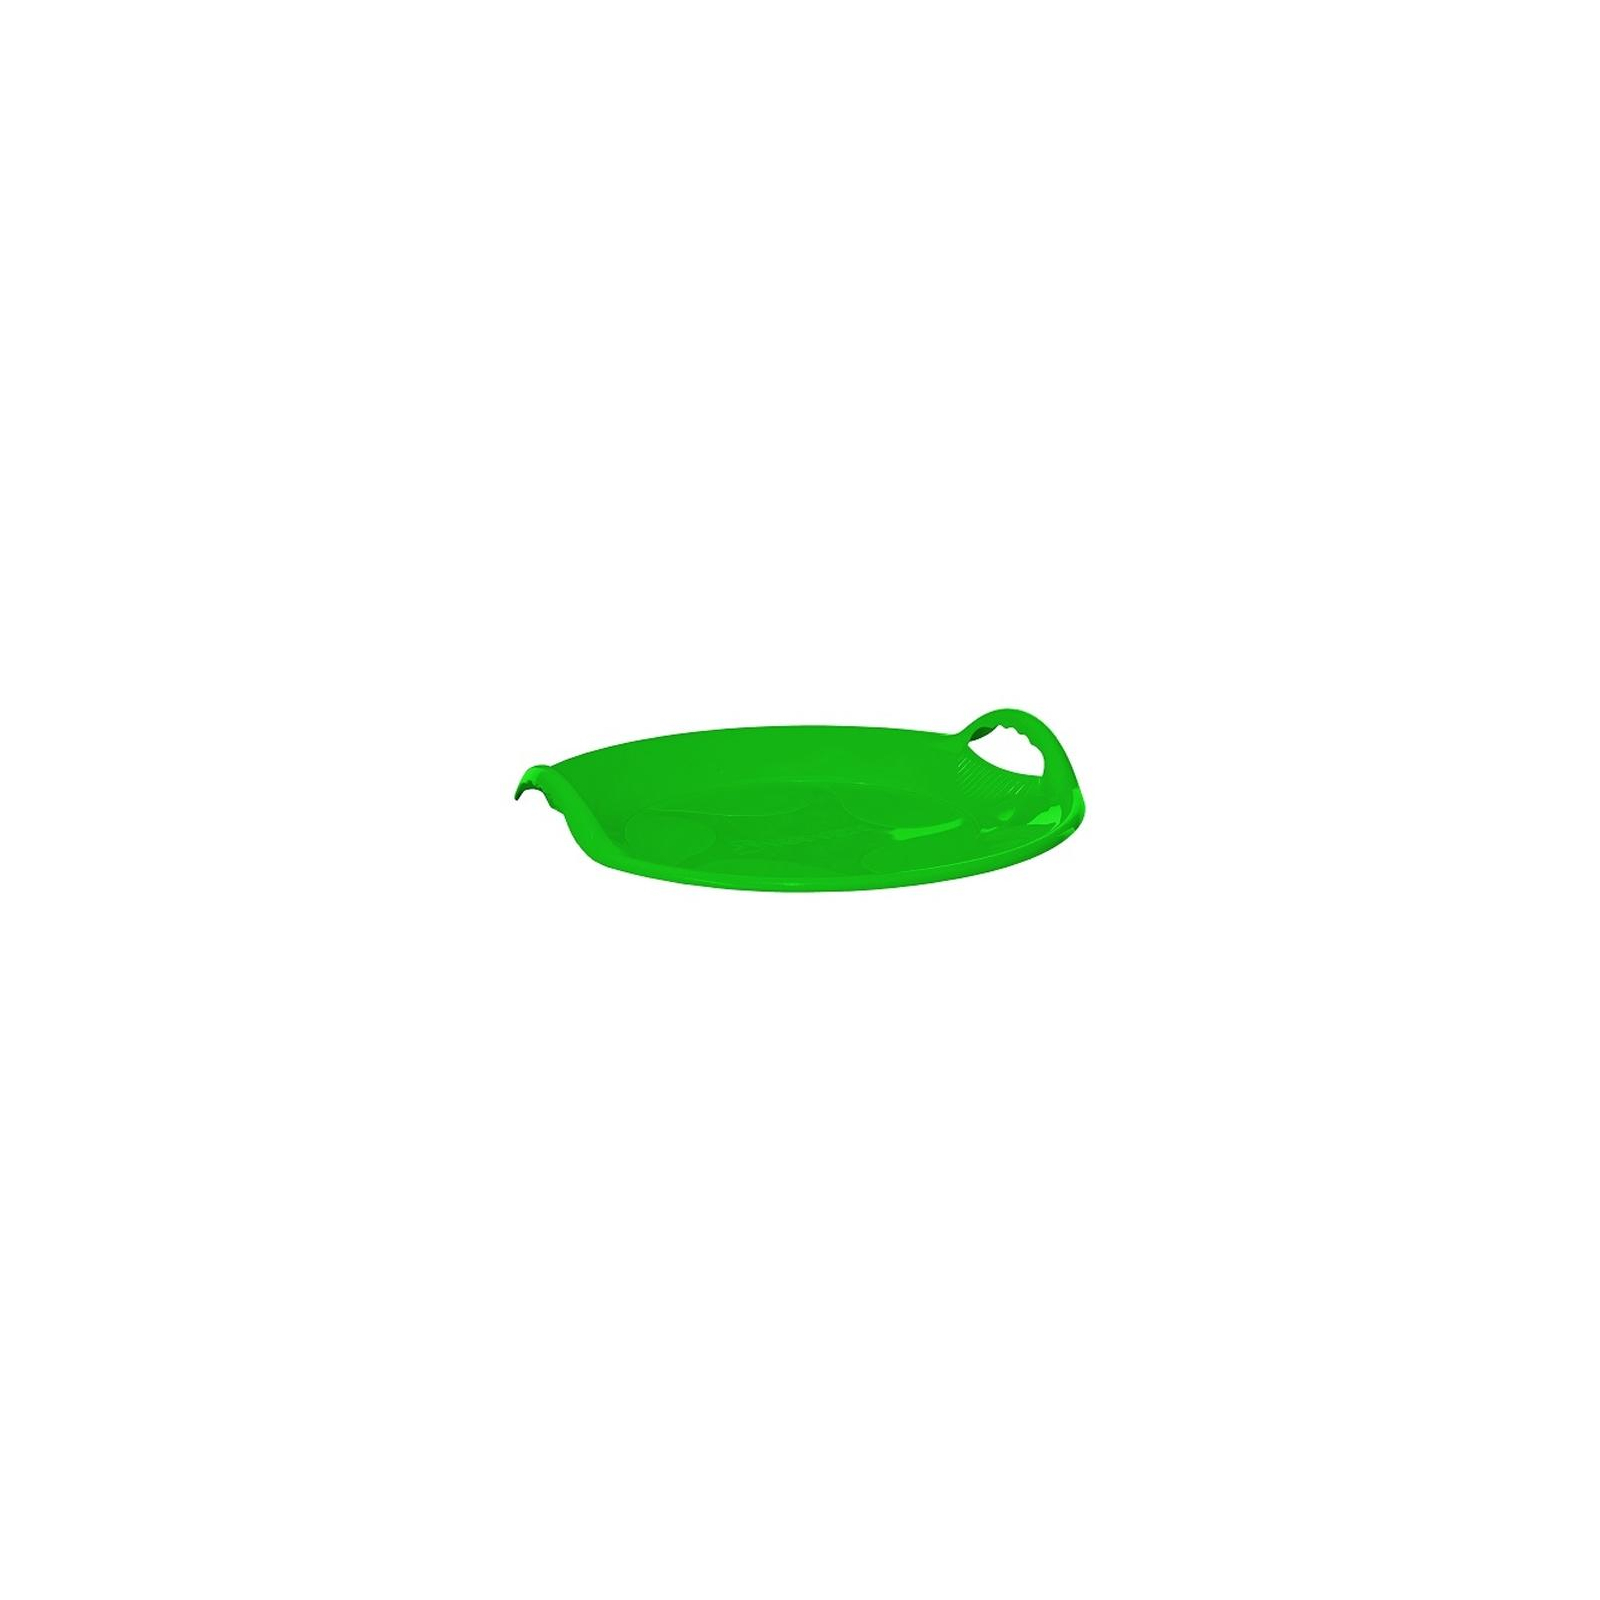 Санки Snower Танирик зеленый (4820211100025) изображение 2